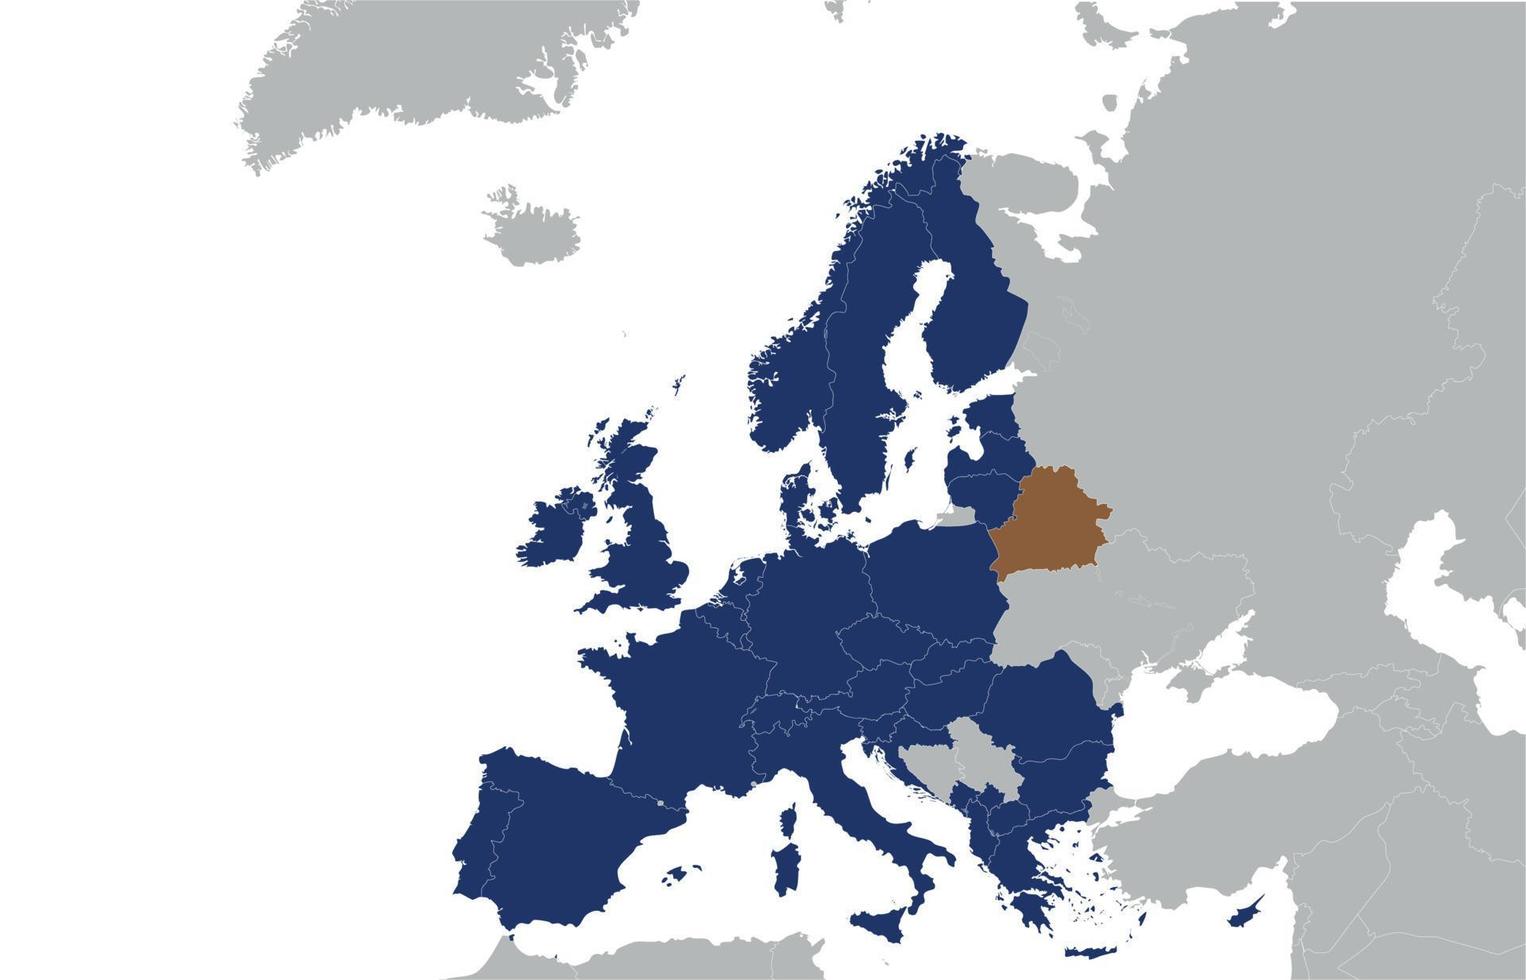 carte de l'europe avec la biélorussie sous la forme d'une tache brune et la russie, le concept de relations politiques. Biélorussie sous forme de merde entre pays. illustration vectorielle vecteur